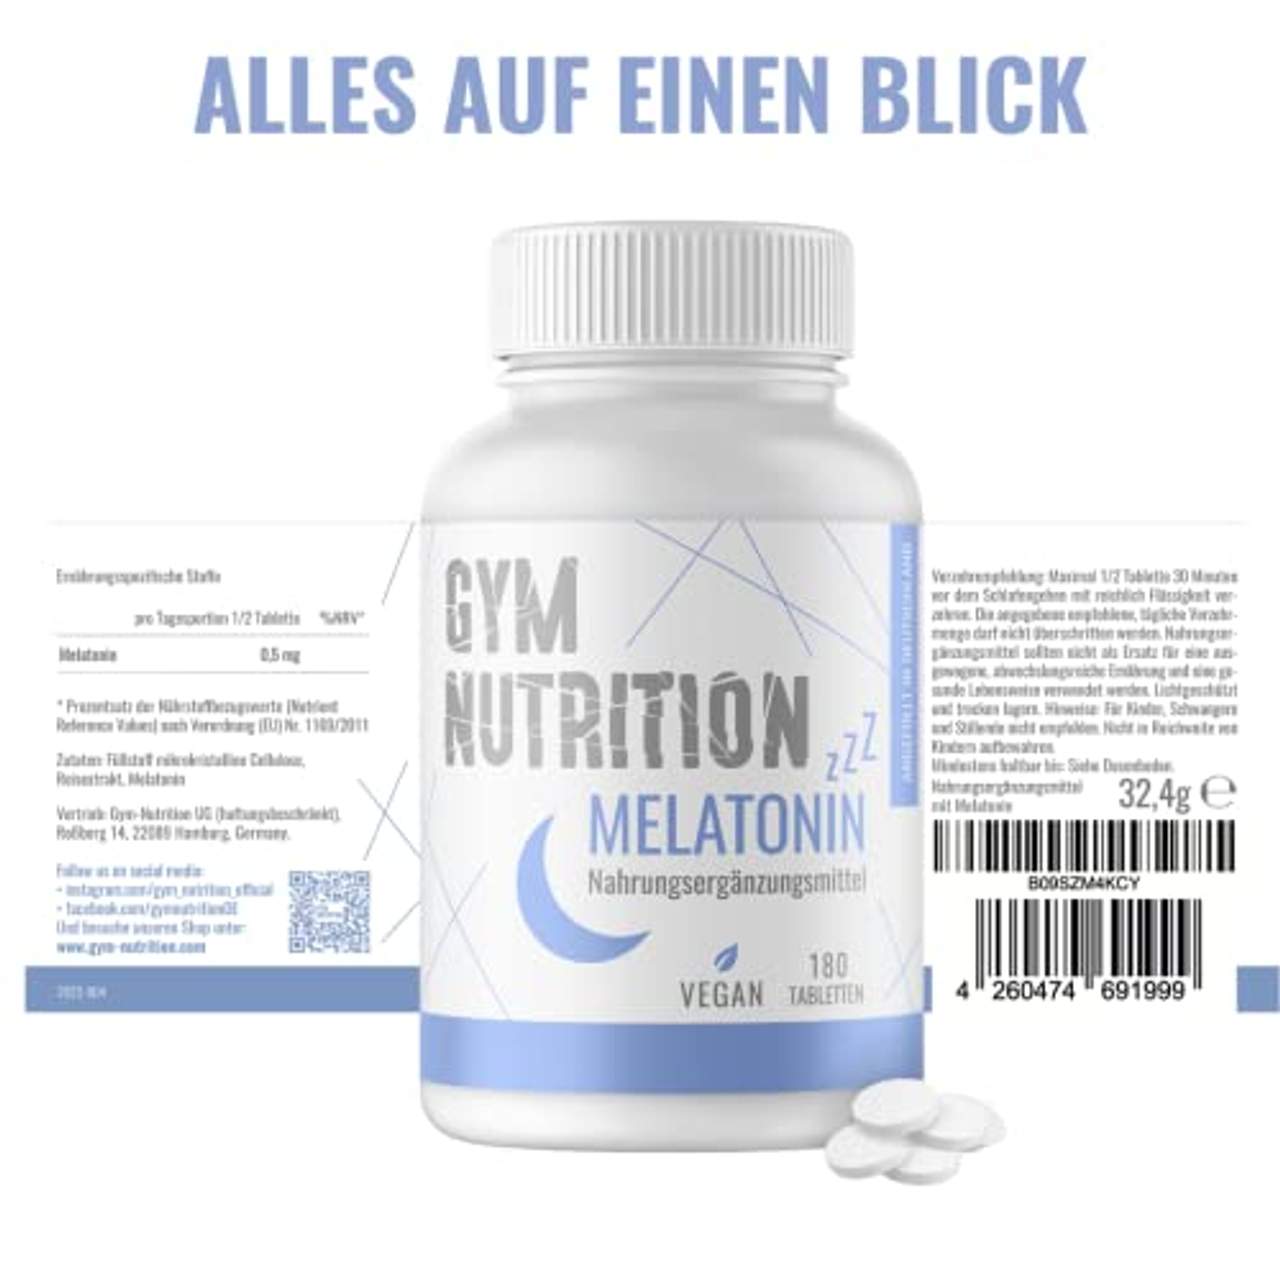 Gym Nutrition Melatonin Tabletten